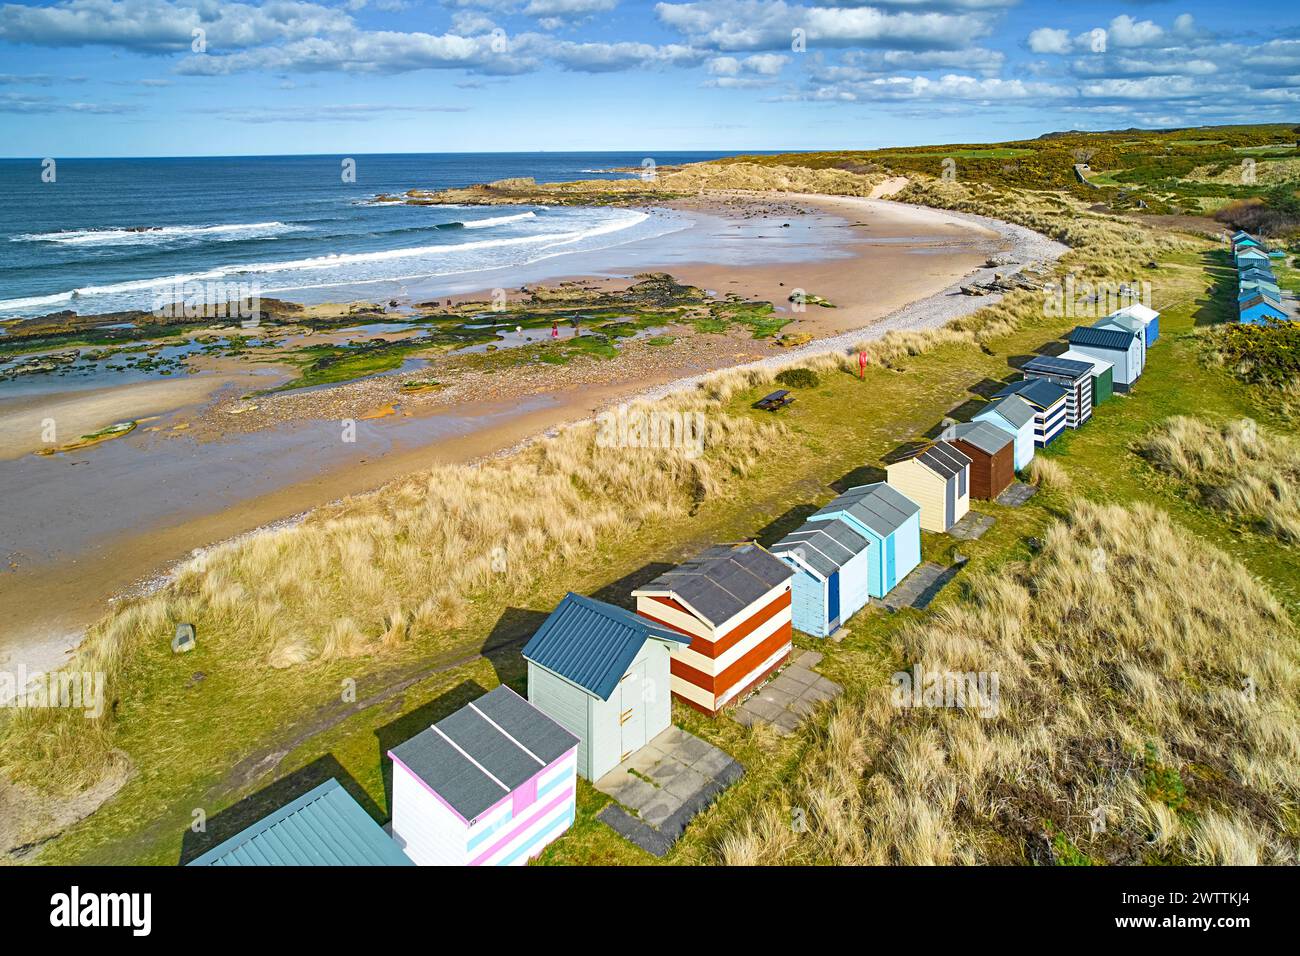 Hopeman Moray Coast Escocia cielo azul y una fila de coloridas cabañas o chalets de playa con vistas a la barrida de la playa de arena Foto de stock